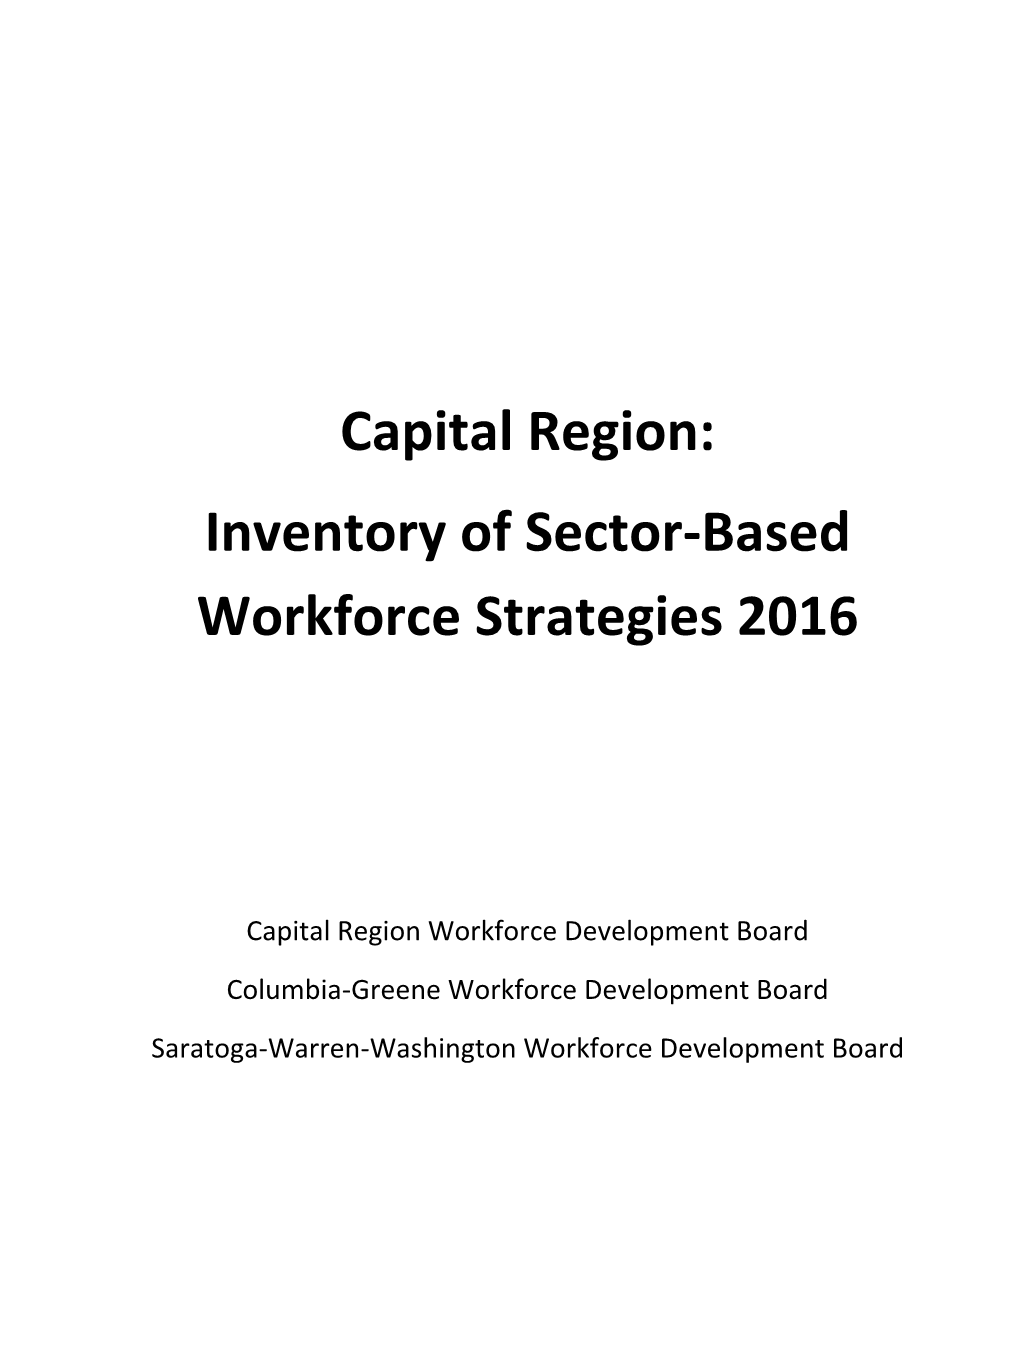 Capital Region: Inventory of Sector-Based Workforce Strategies 2016